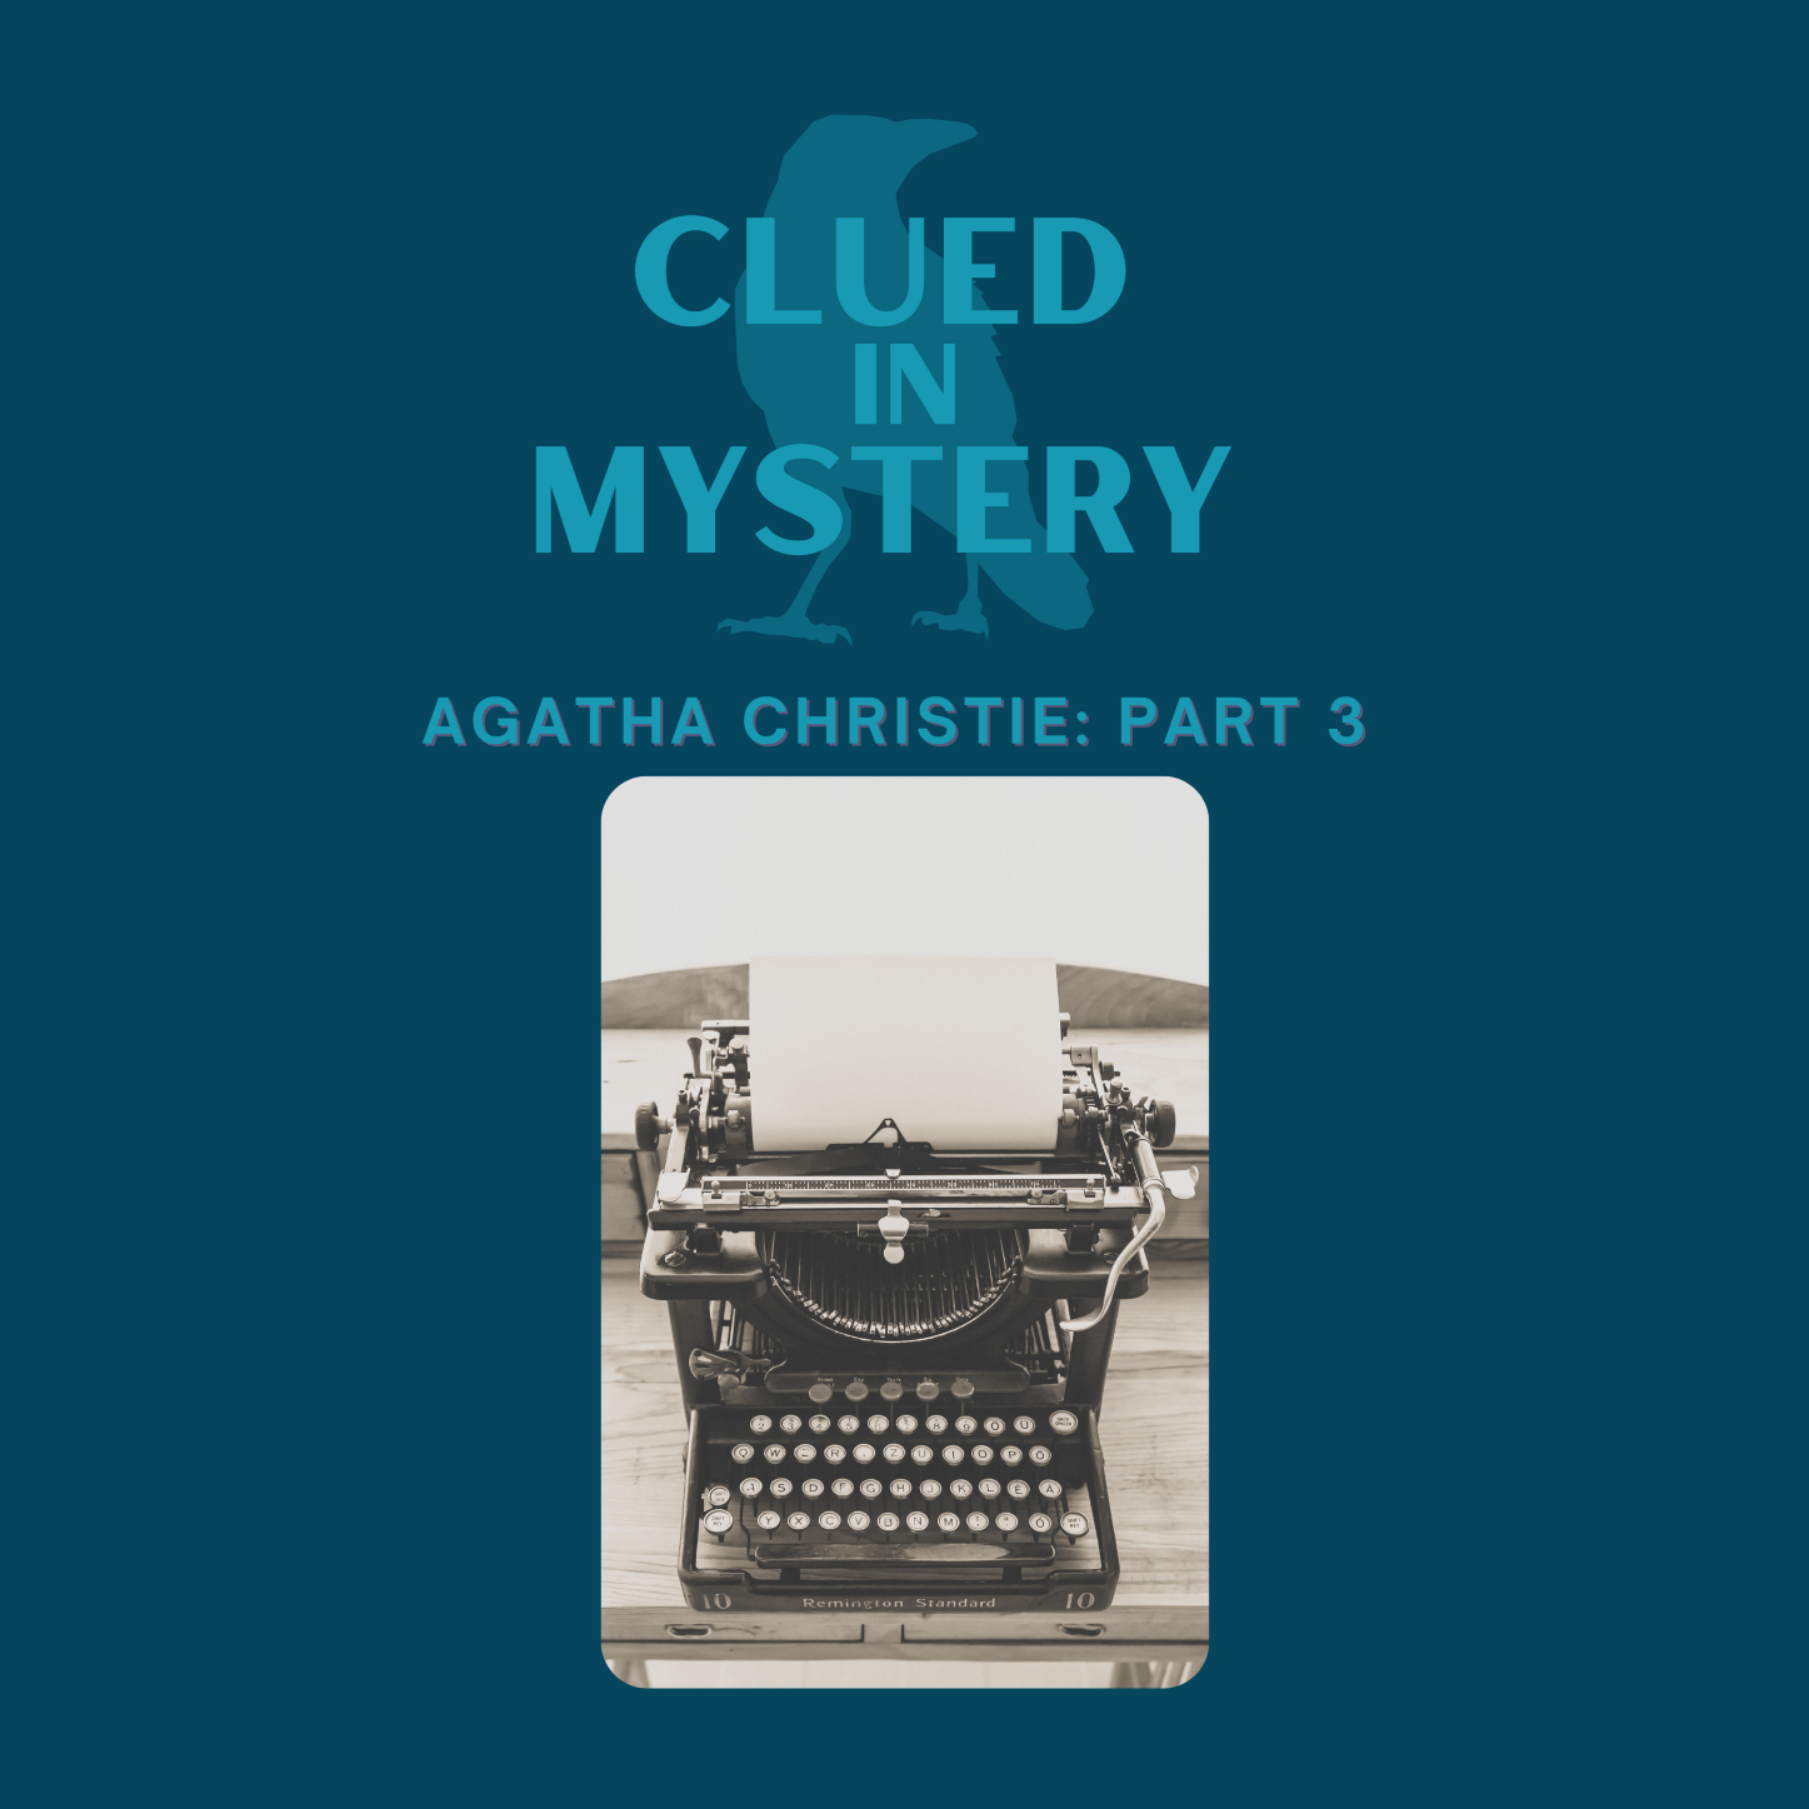 Agatha Christie (part 3)